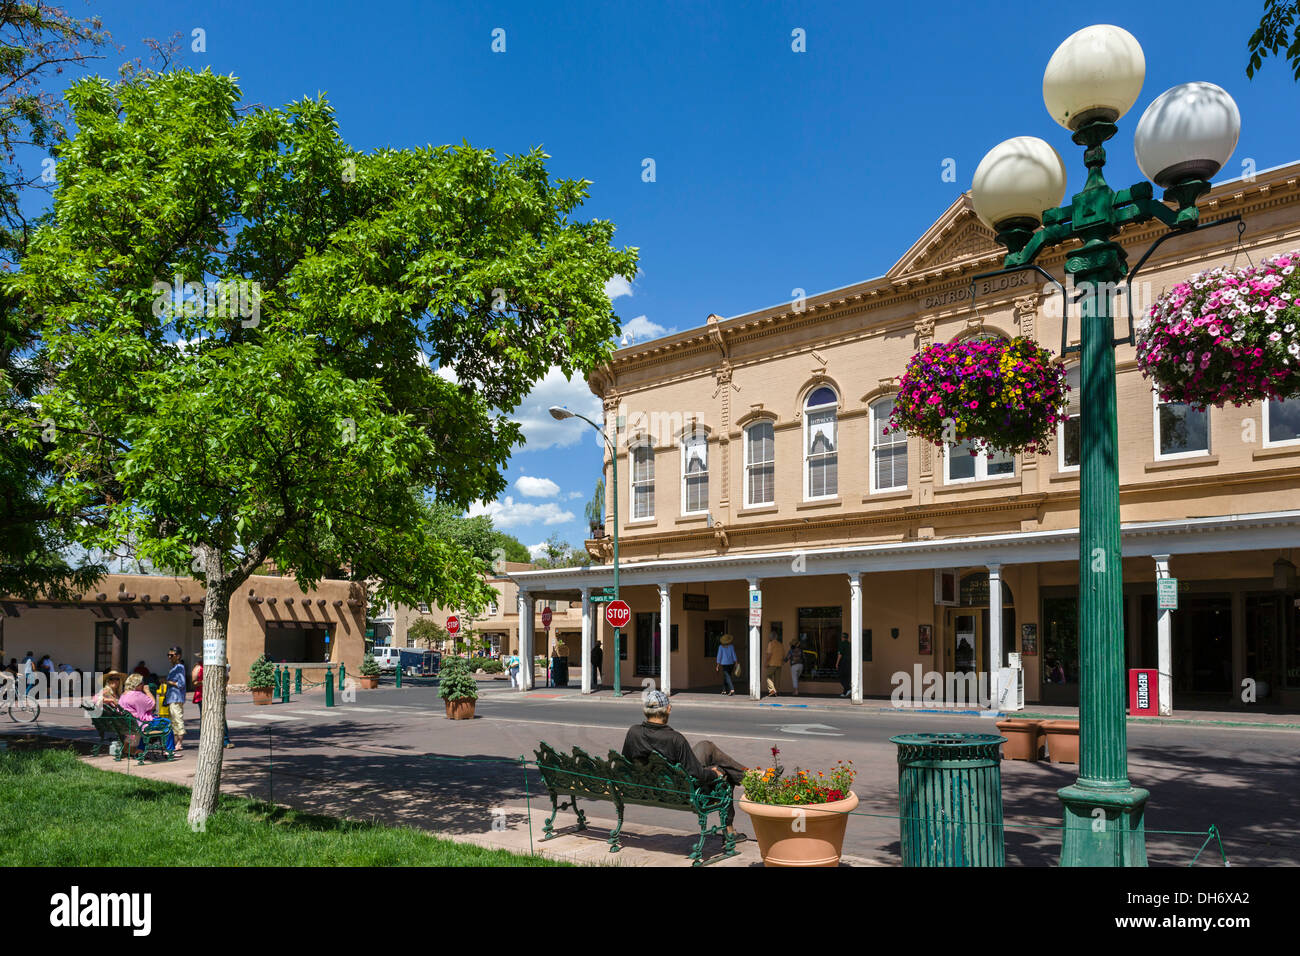 The historic Santa Fe Plaza in downtown Santa Fe, New Mexico, USA Stock Photo